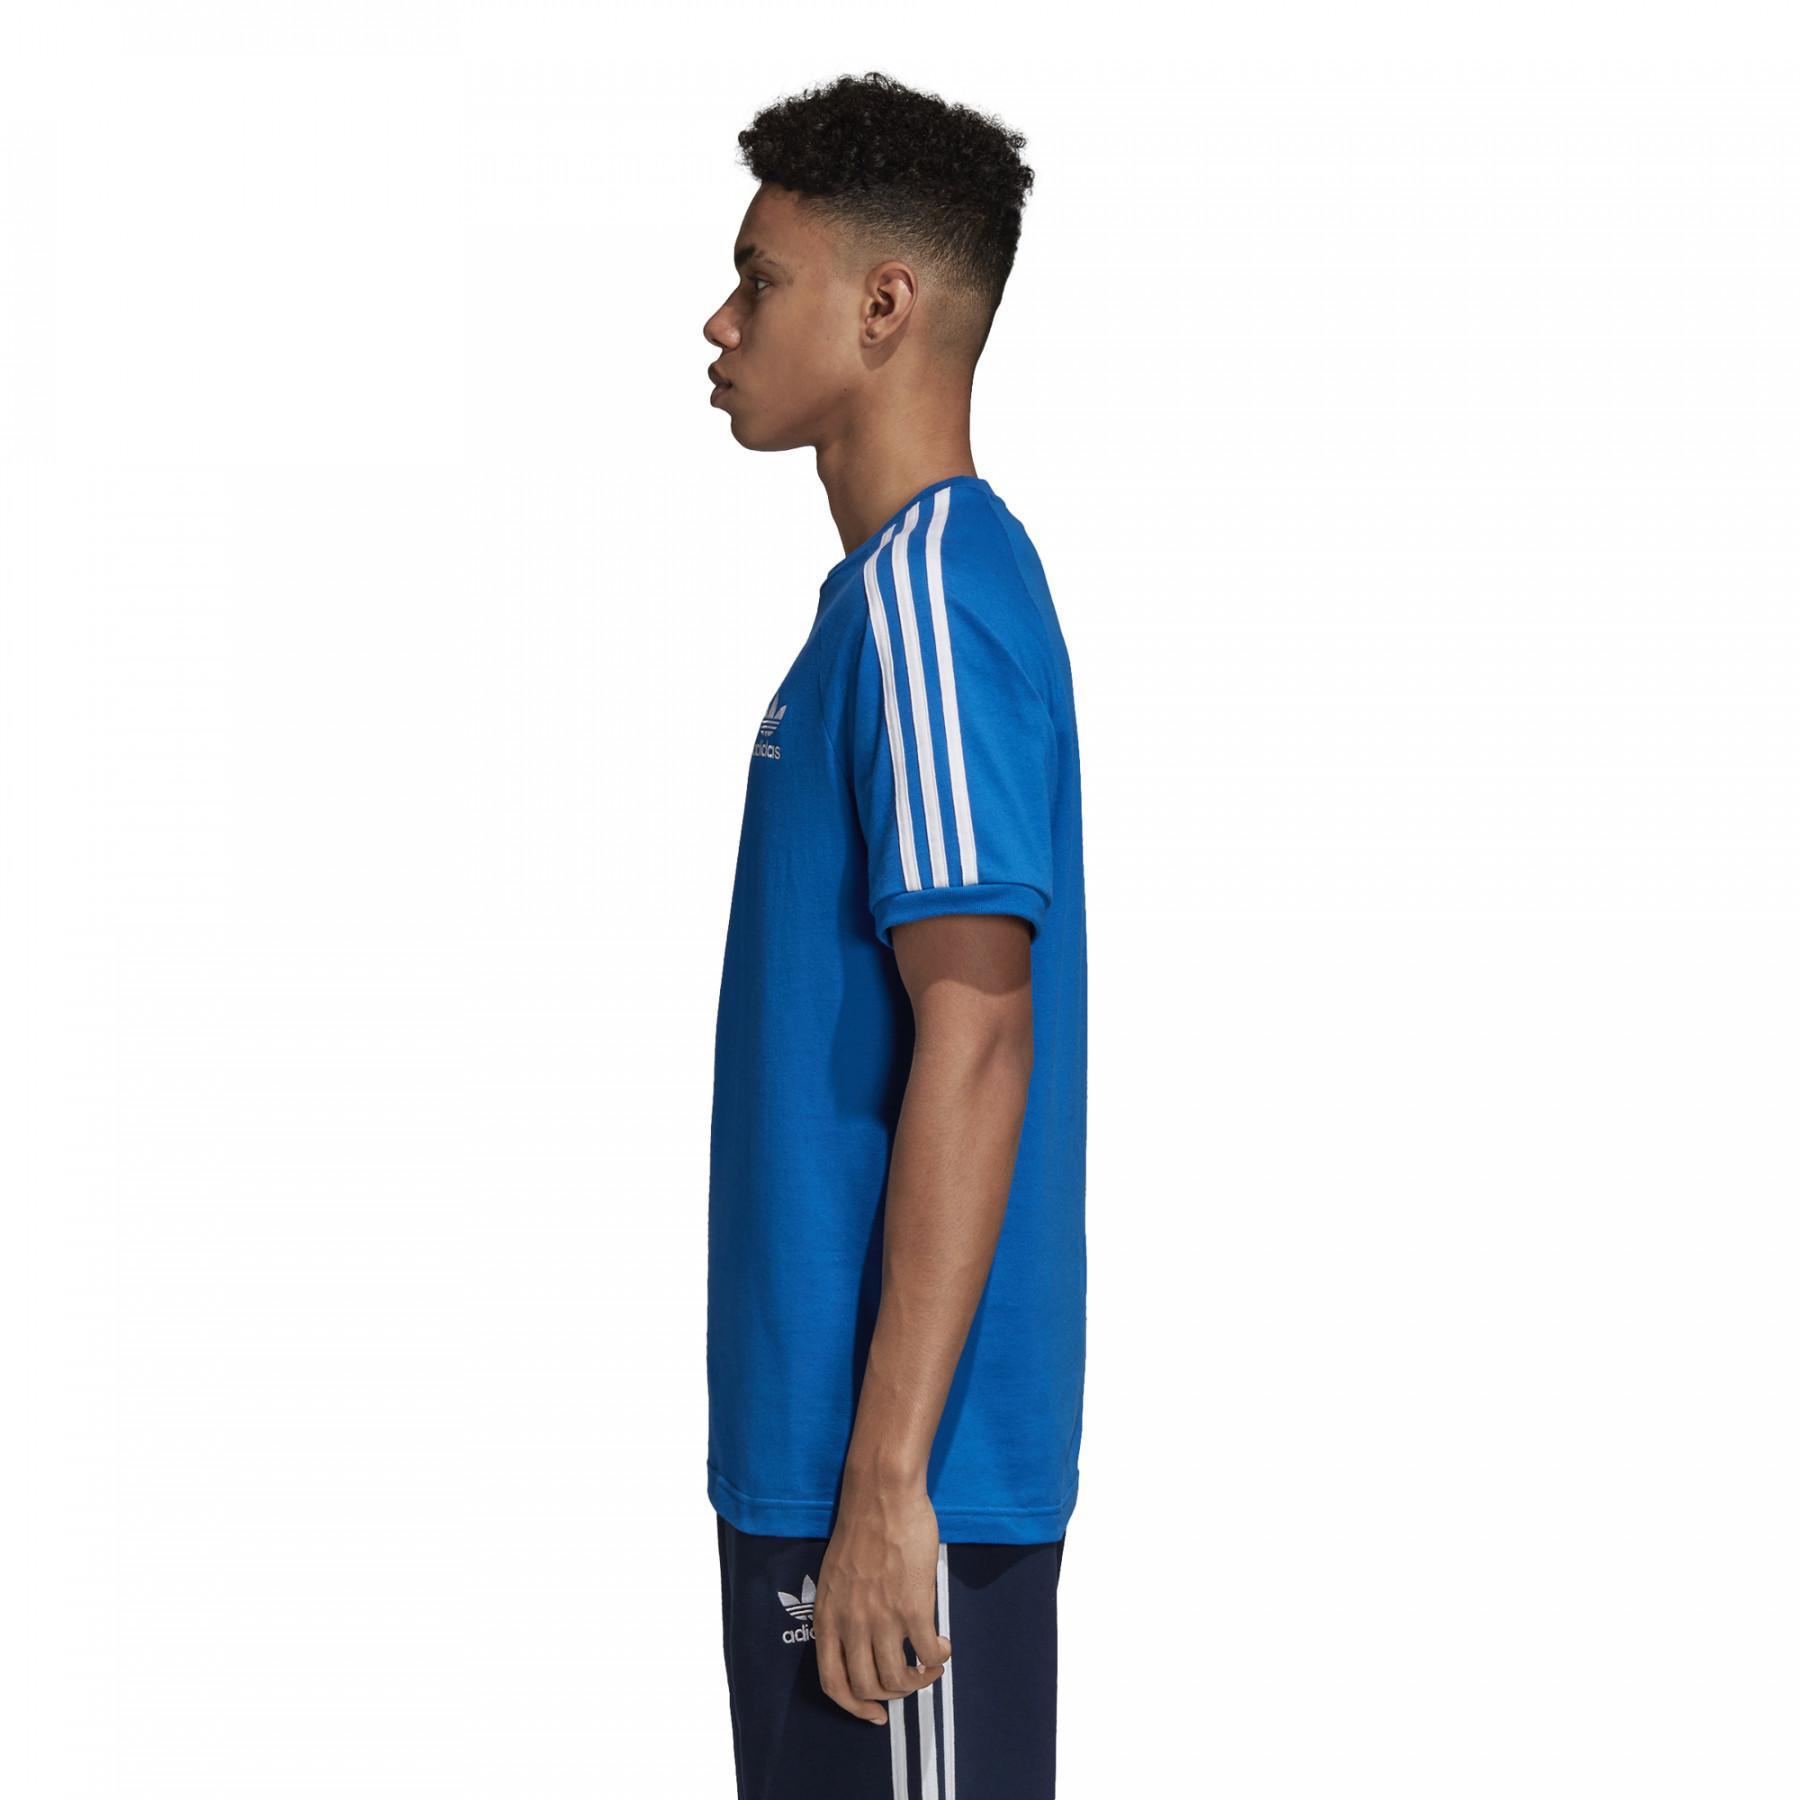 Koszulka adidas 3-Stripes